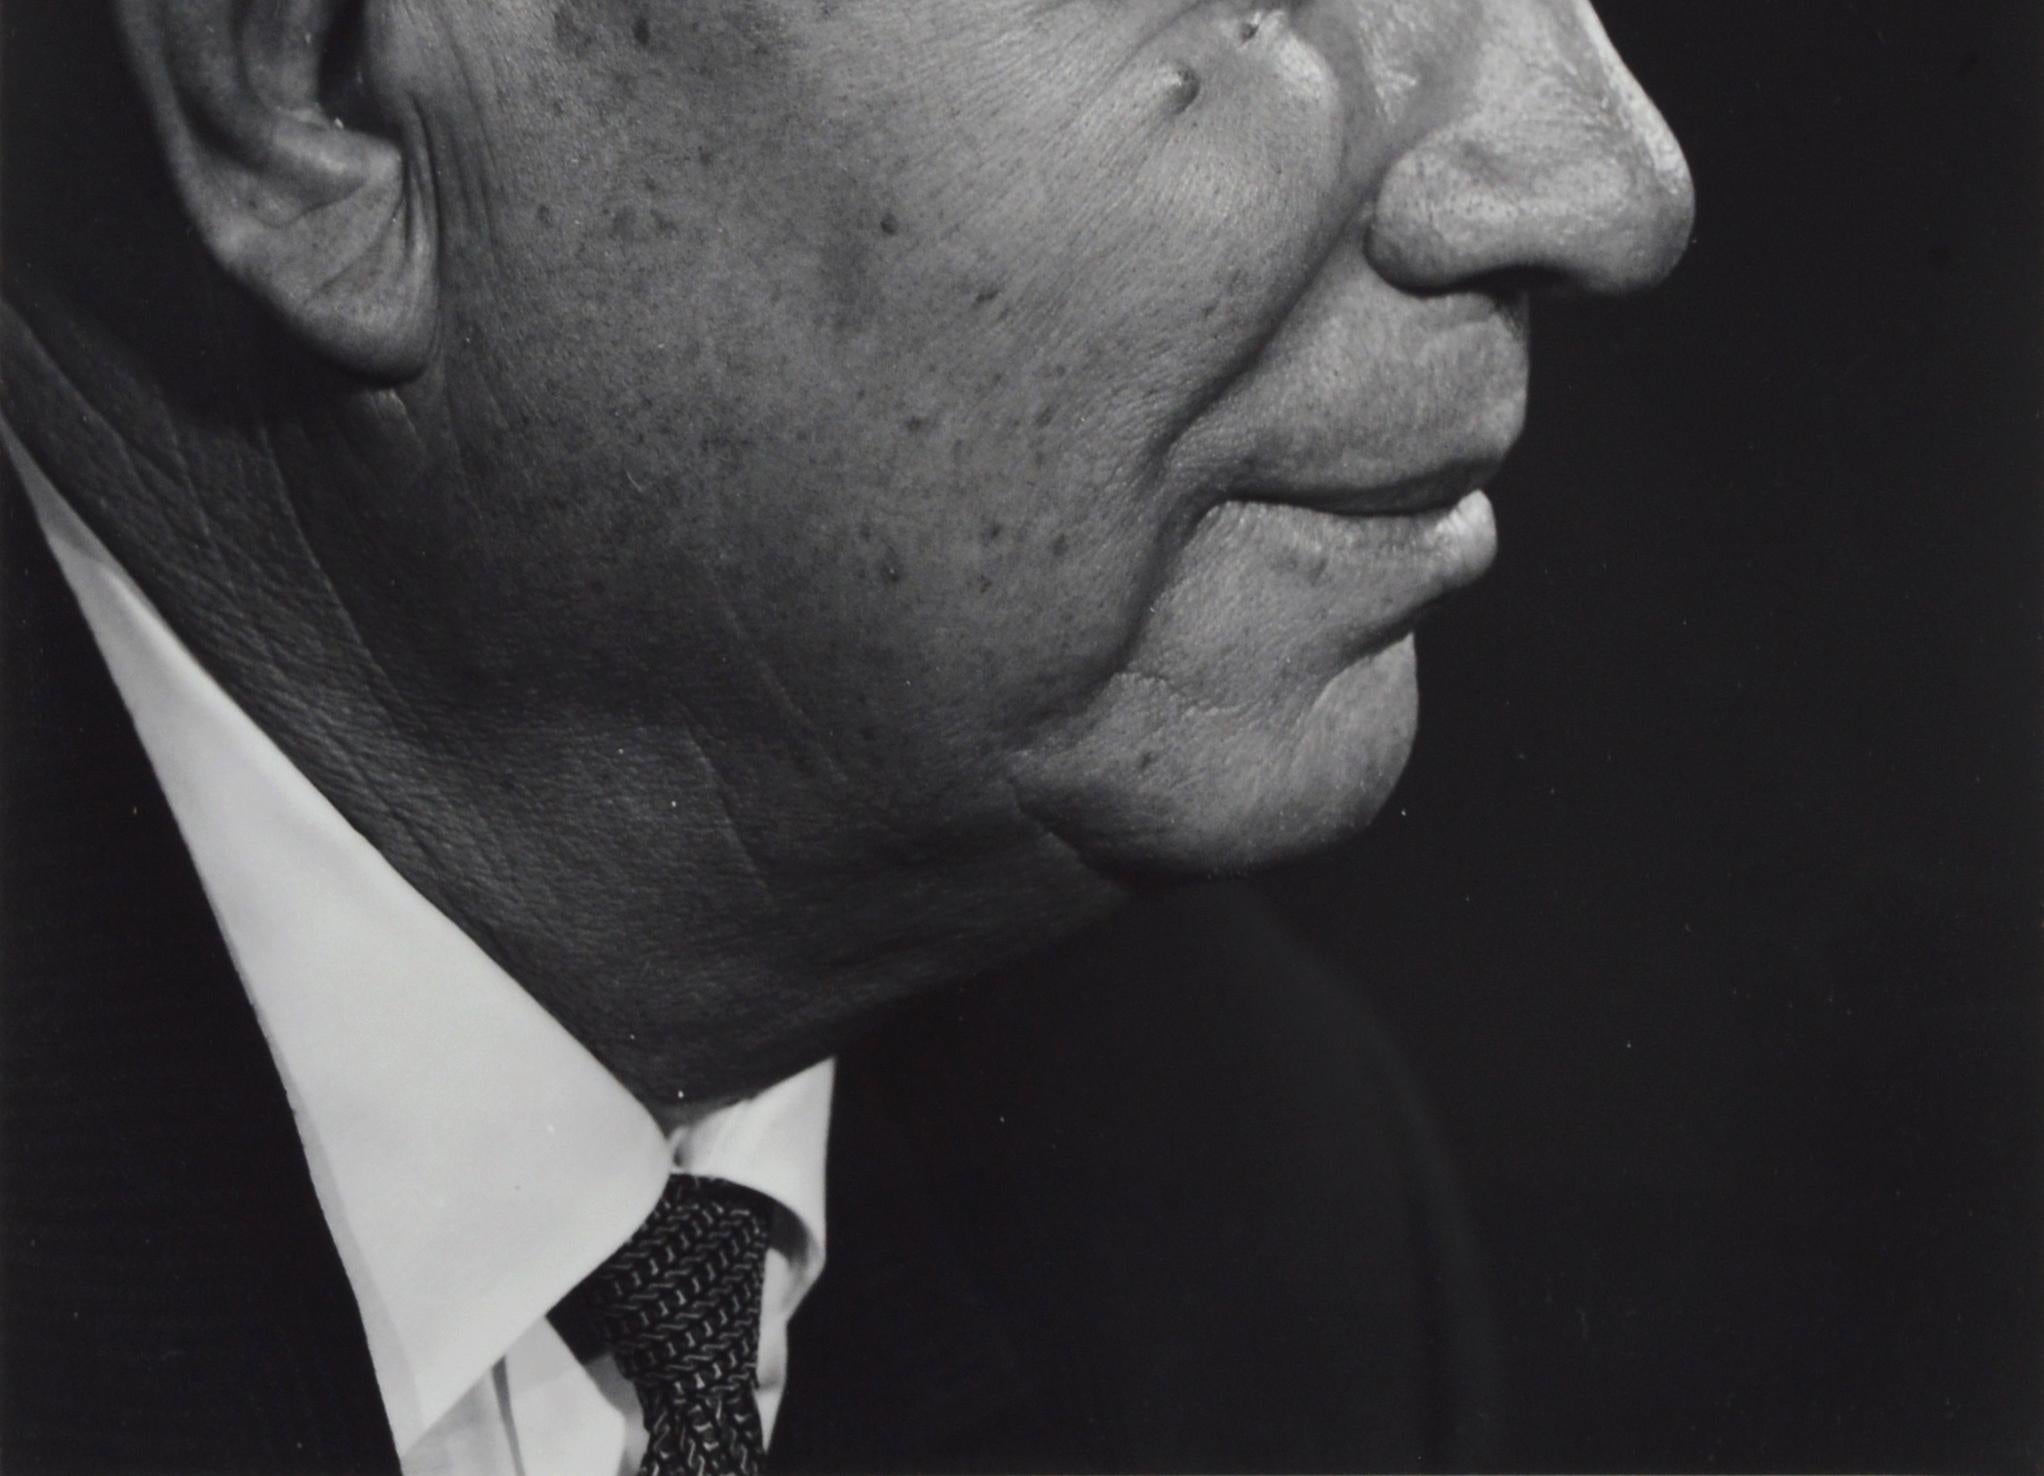 Exquisite Schwarz-Weiß-Fotografie von Nikita Chruschtschow, ein Porträt im Profil des ehemaligen Ministerpräsidenten der Sowjetunion, von Yousuf Karsh (Armenier, 1908-2002) aus seiner Sitzung 1963. Dieses Stück ist unsigniert, wurde aber 2006 von